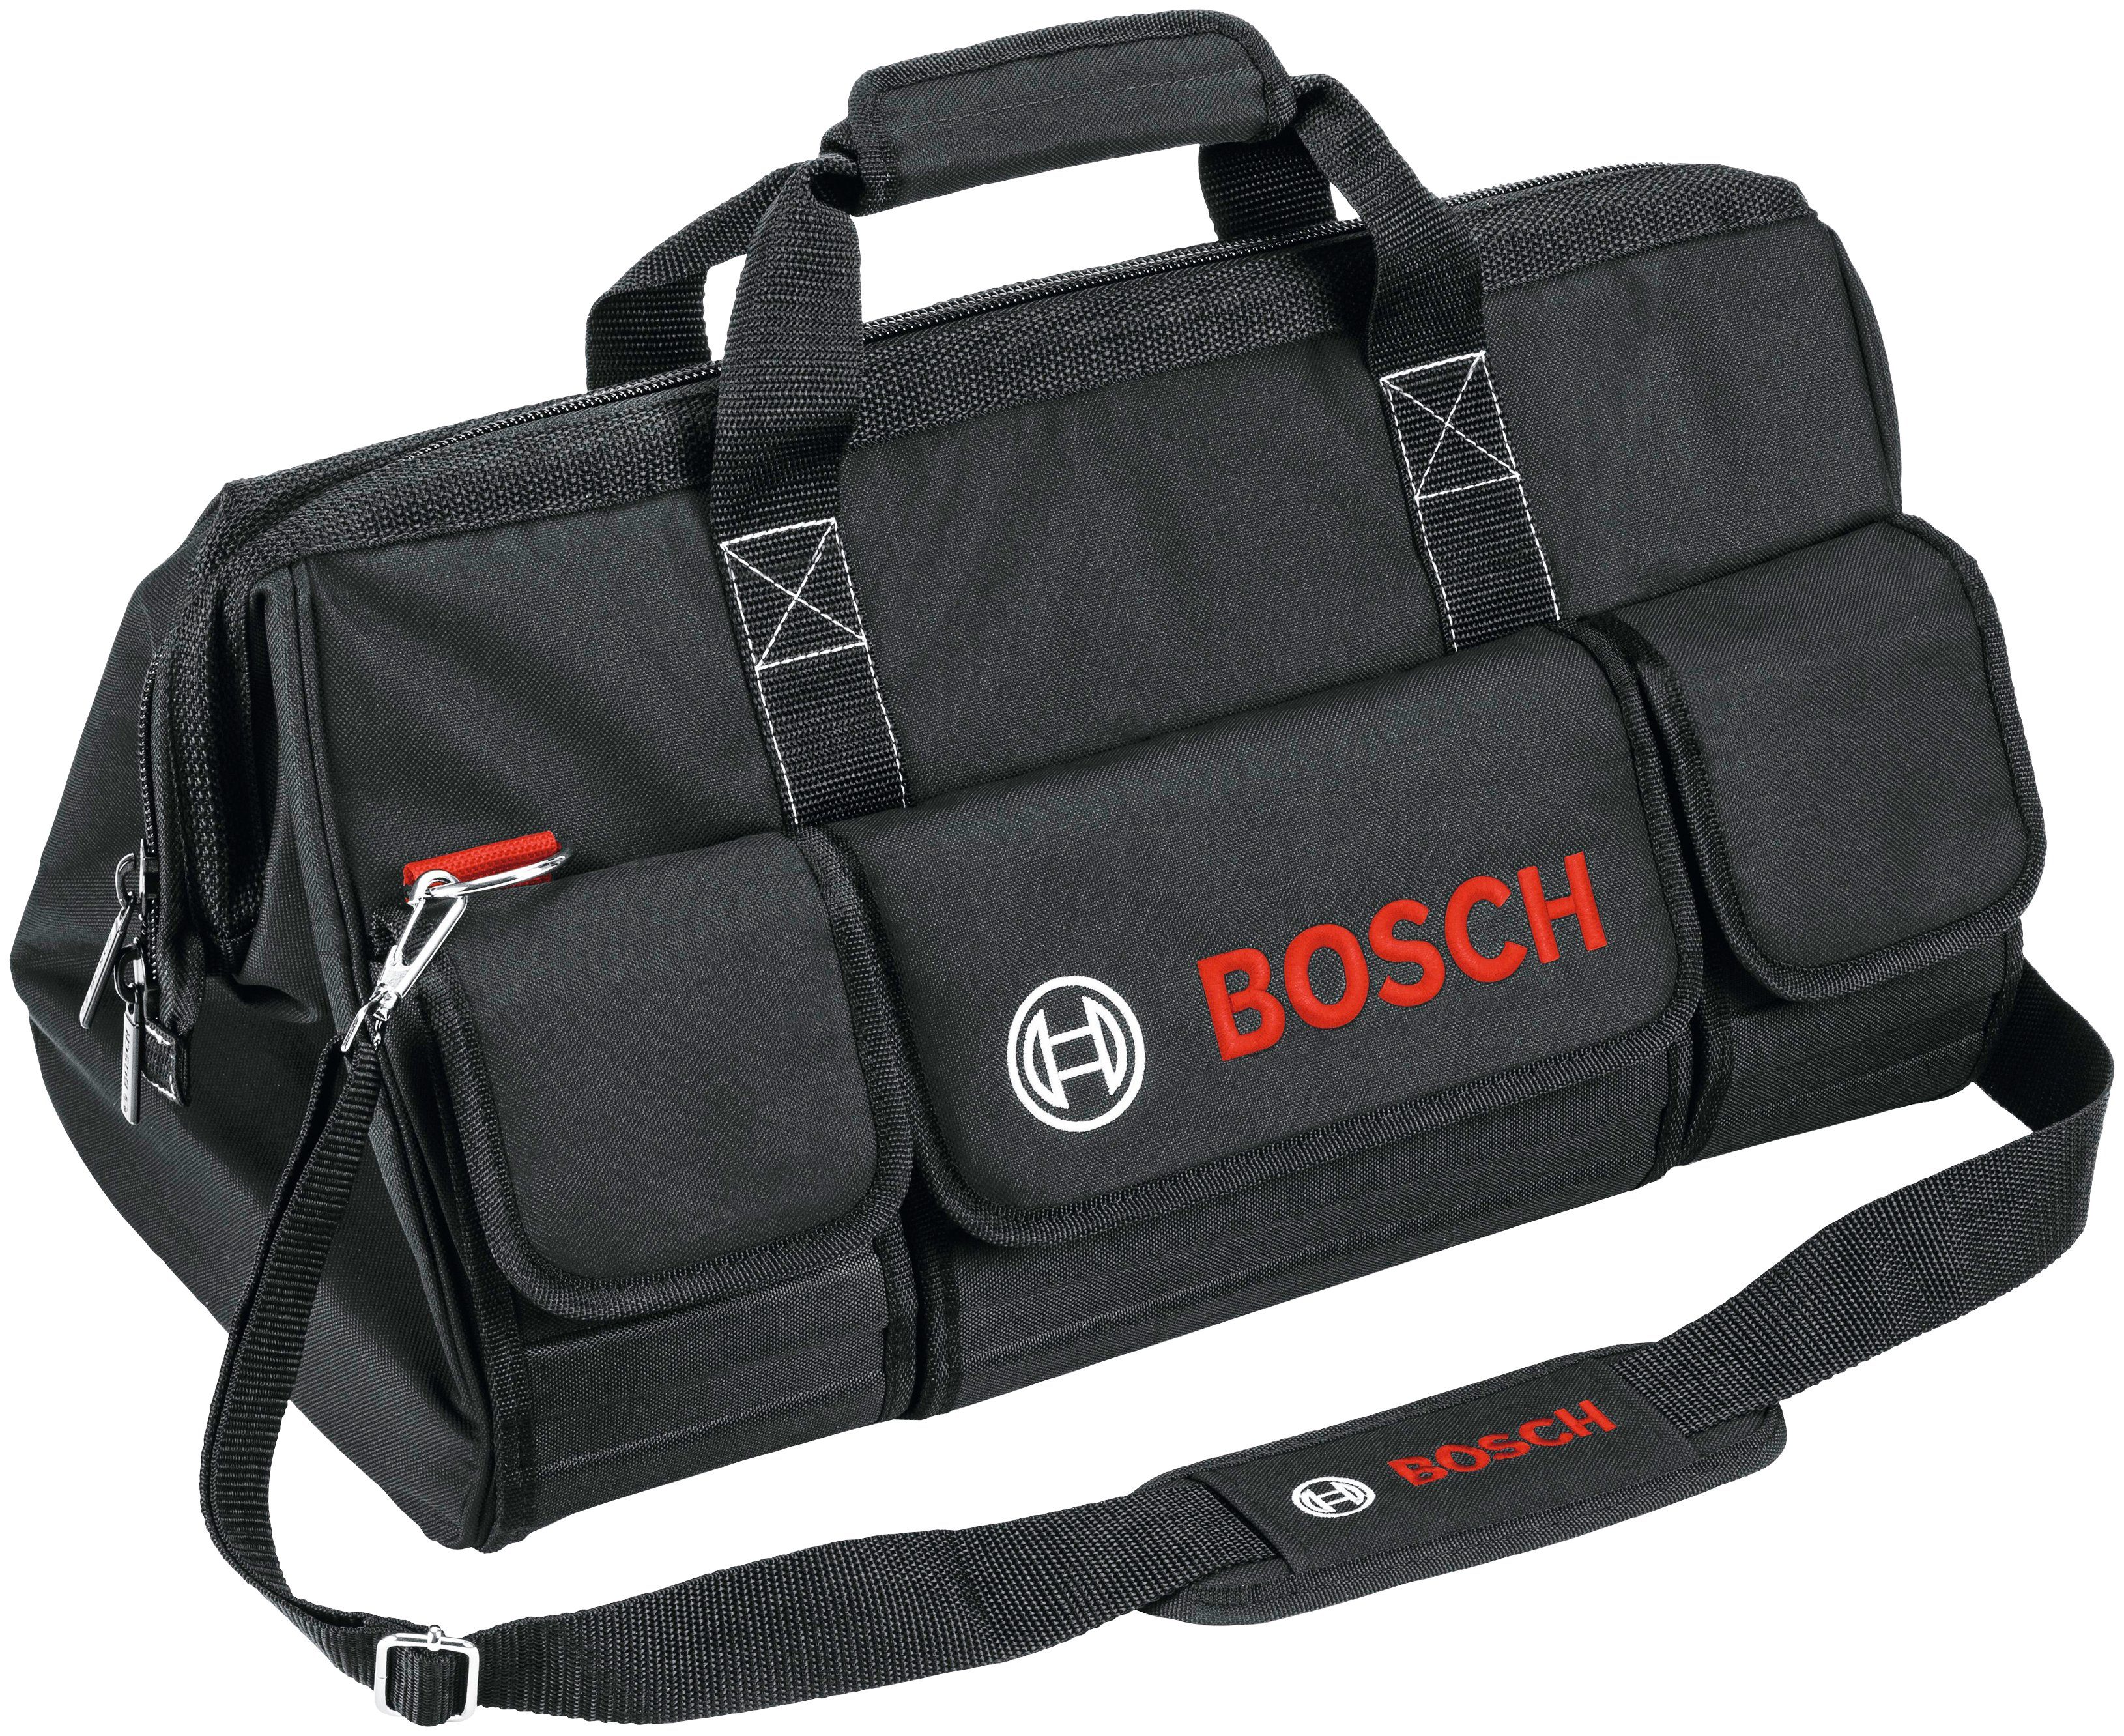 Bosch Professional Elektrowerkzeug-Set GSR, GWS inkl. 9-tlg., Ladegerät & Akkus, 3 Tasche und GBH